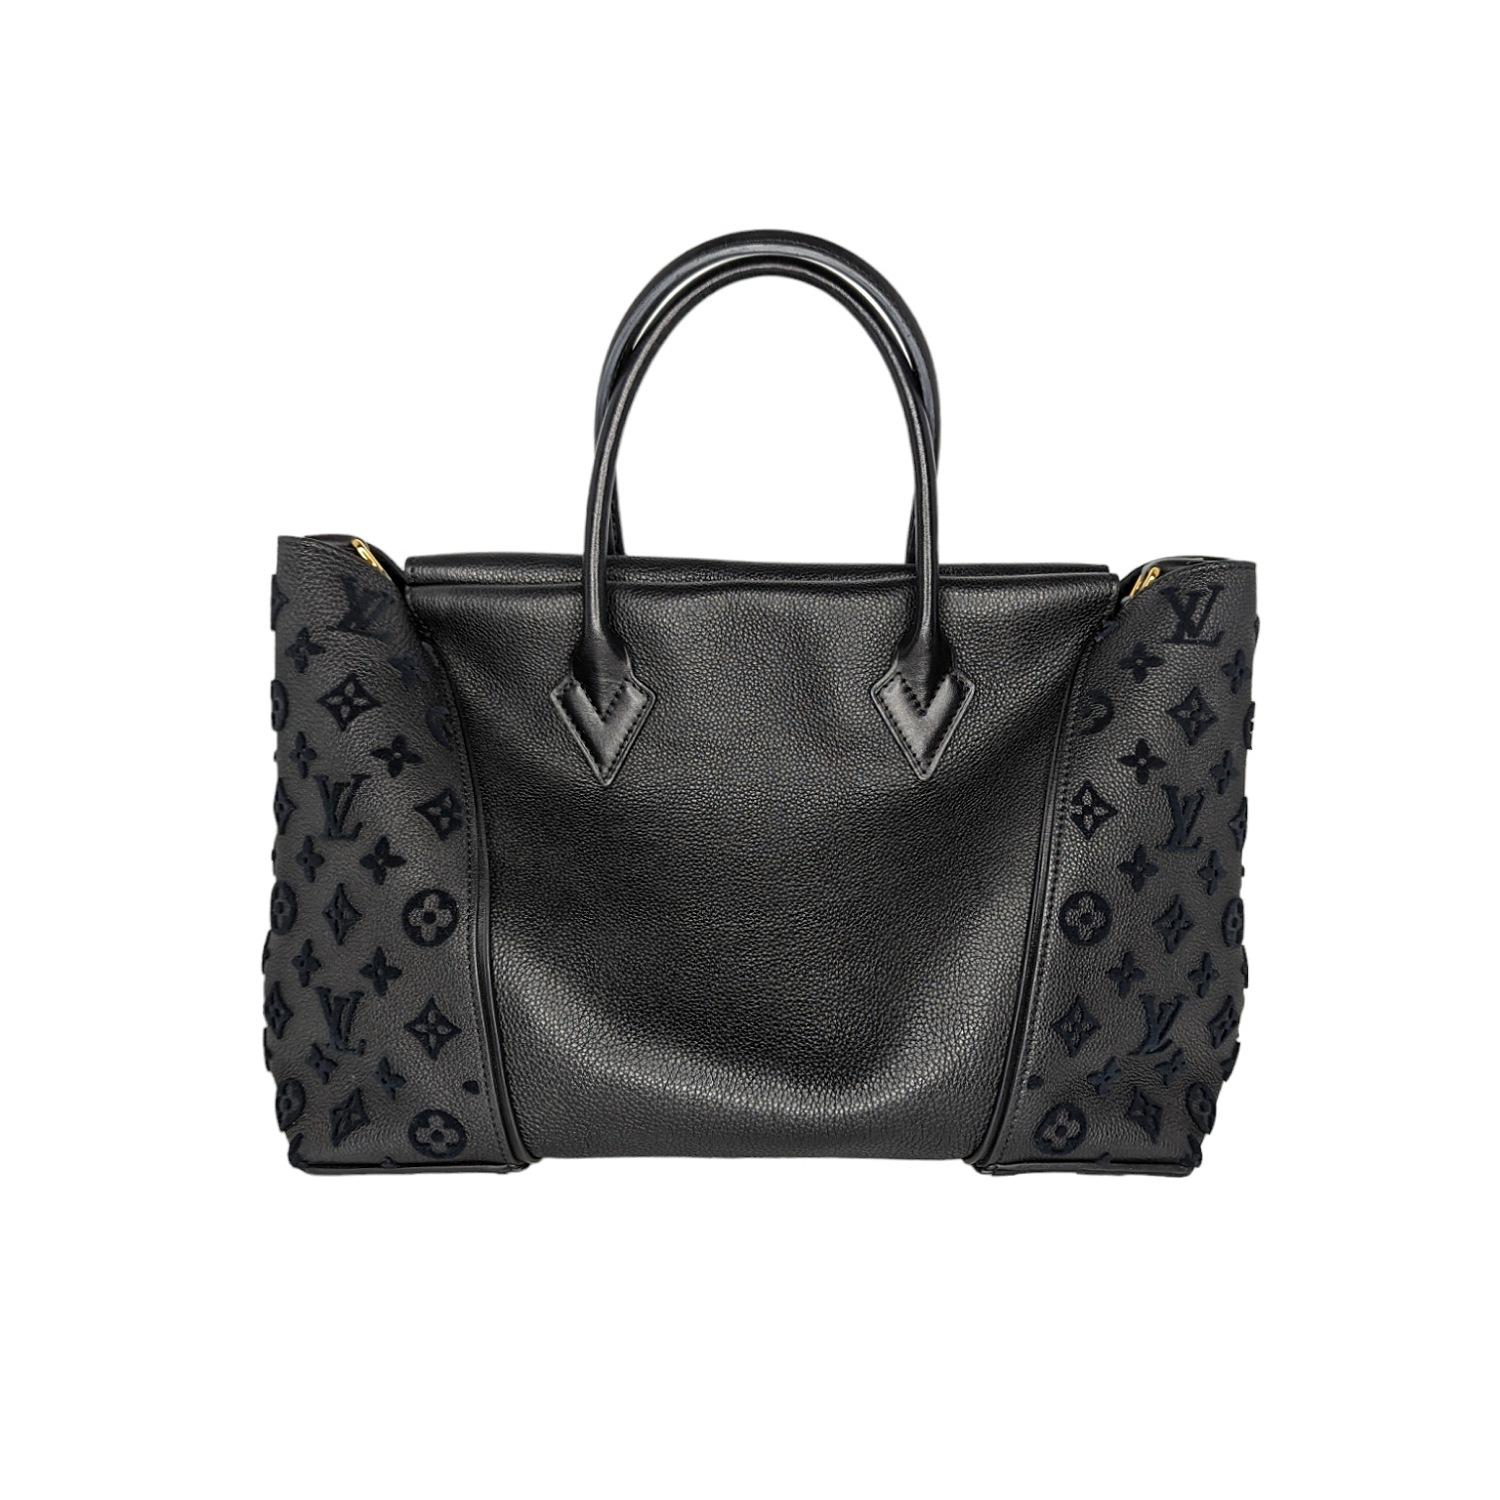 Diese luxuriöse und elegante Handtasche ist fein in schwarzer Farbe gearbeitet und zeigt das Monogram-Muster in Samt an den Seiten. Der Deckel wird mit versteckten Magnetverschlüssen gesichert und öffnet sich zu einem geräumigen Innenraum aus